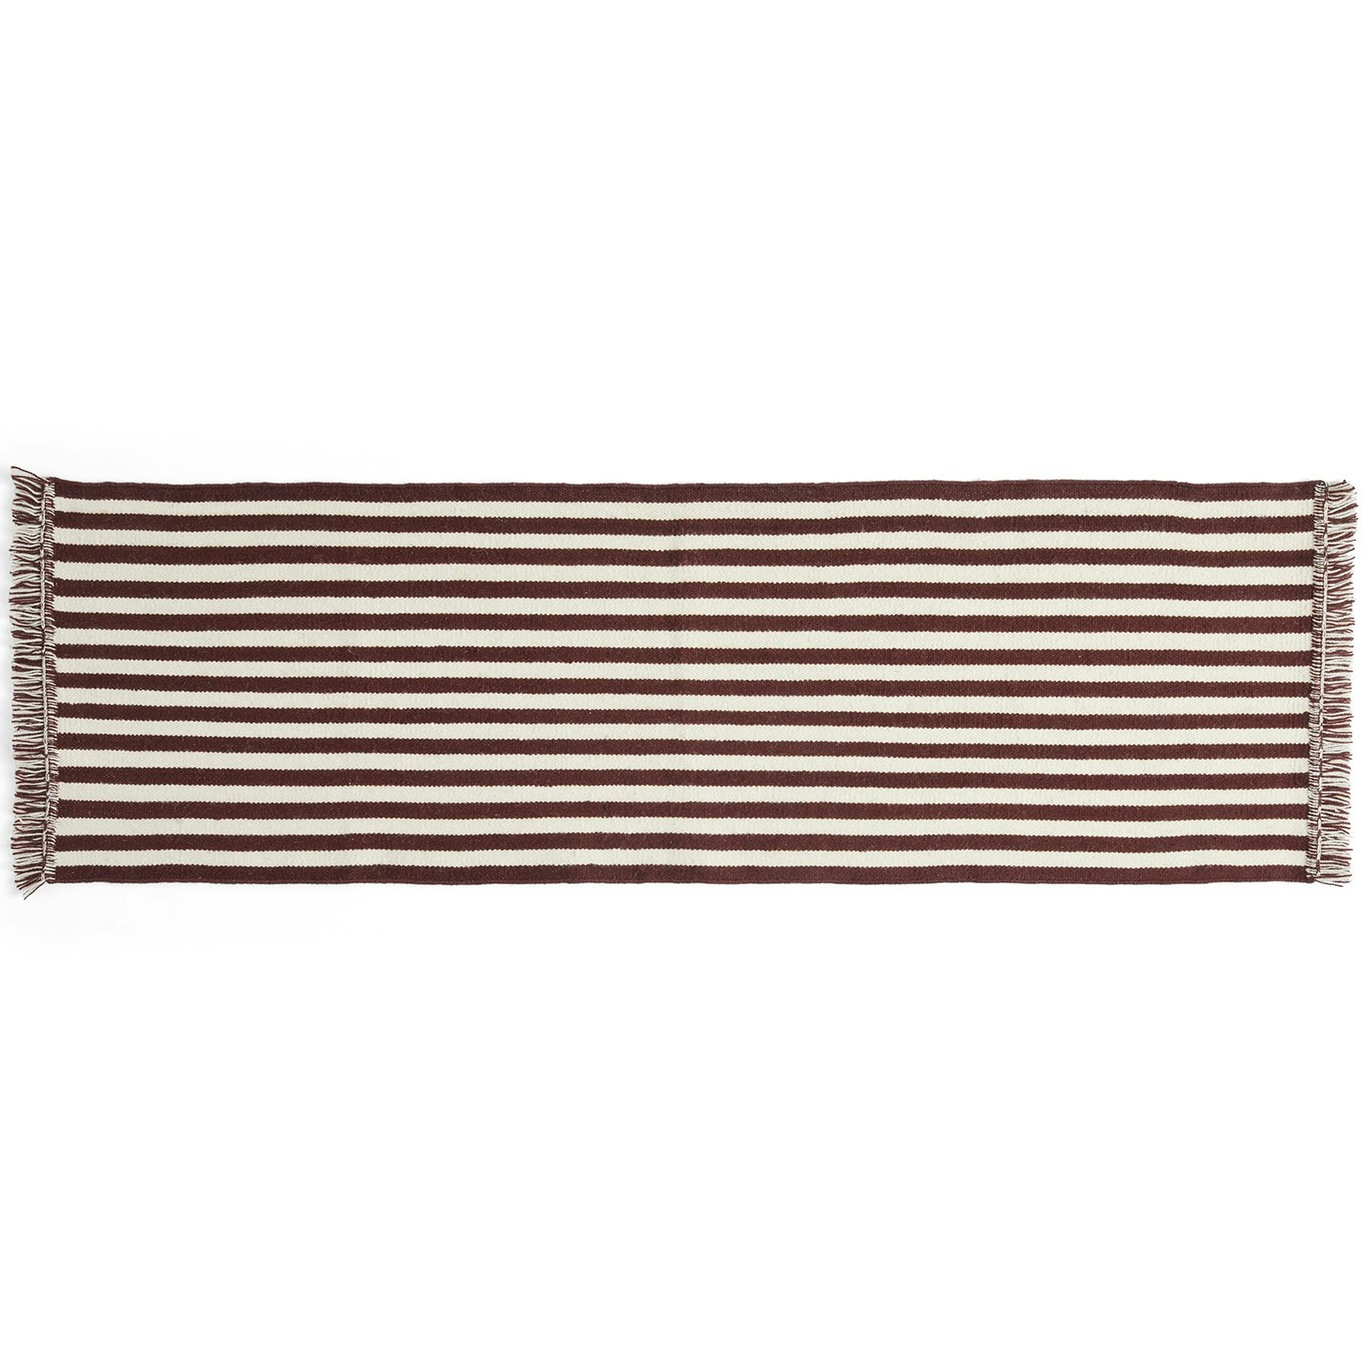 Stripes and Stripes Rug 60x200 cm, Cream